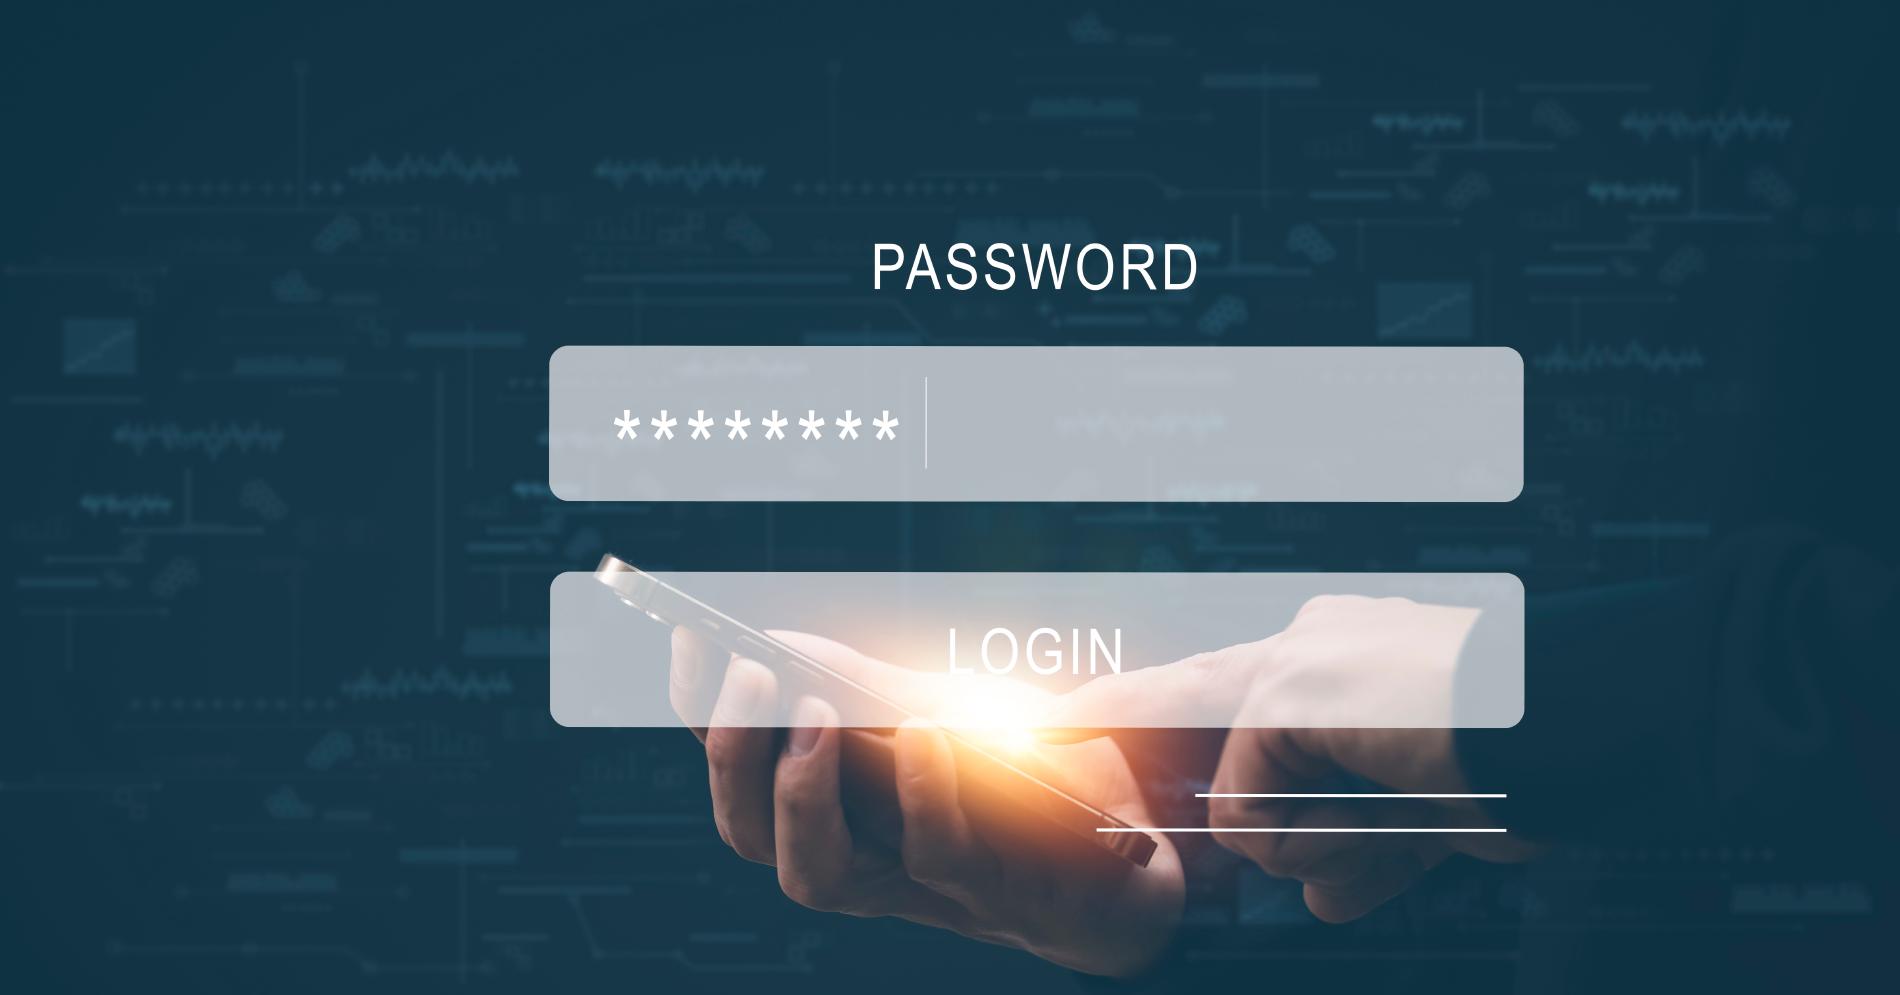 Ein Anmeldebildschirm mit Passwortfeld wird über einen Benutzer gelegt, der sein Smartphone in einer Hand hält und mit der anderen Hand tippt.